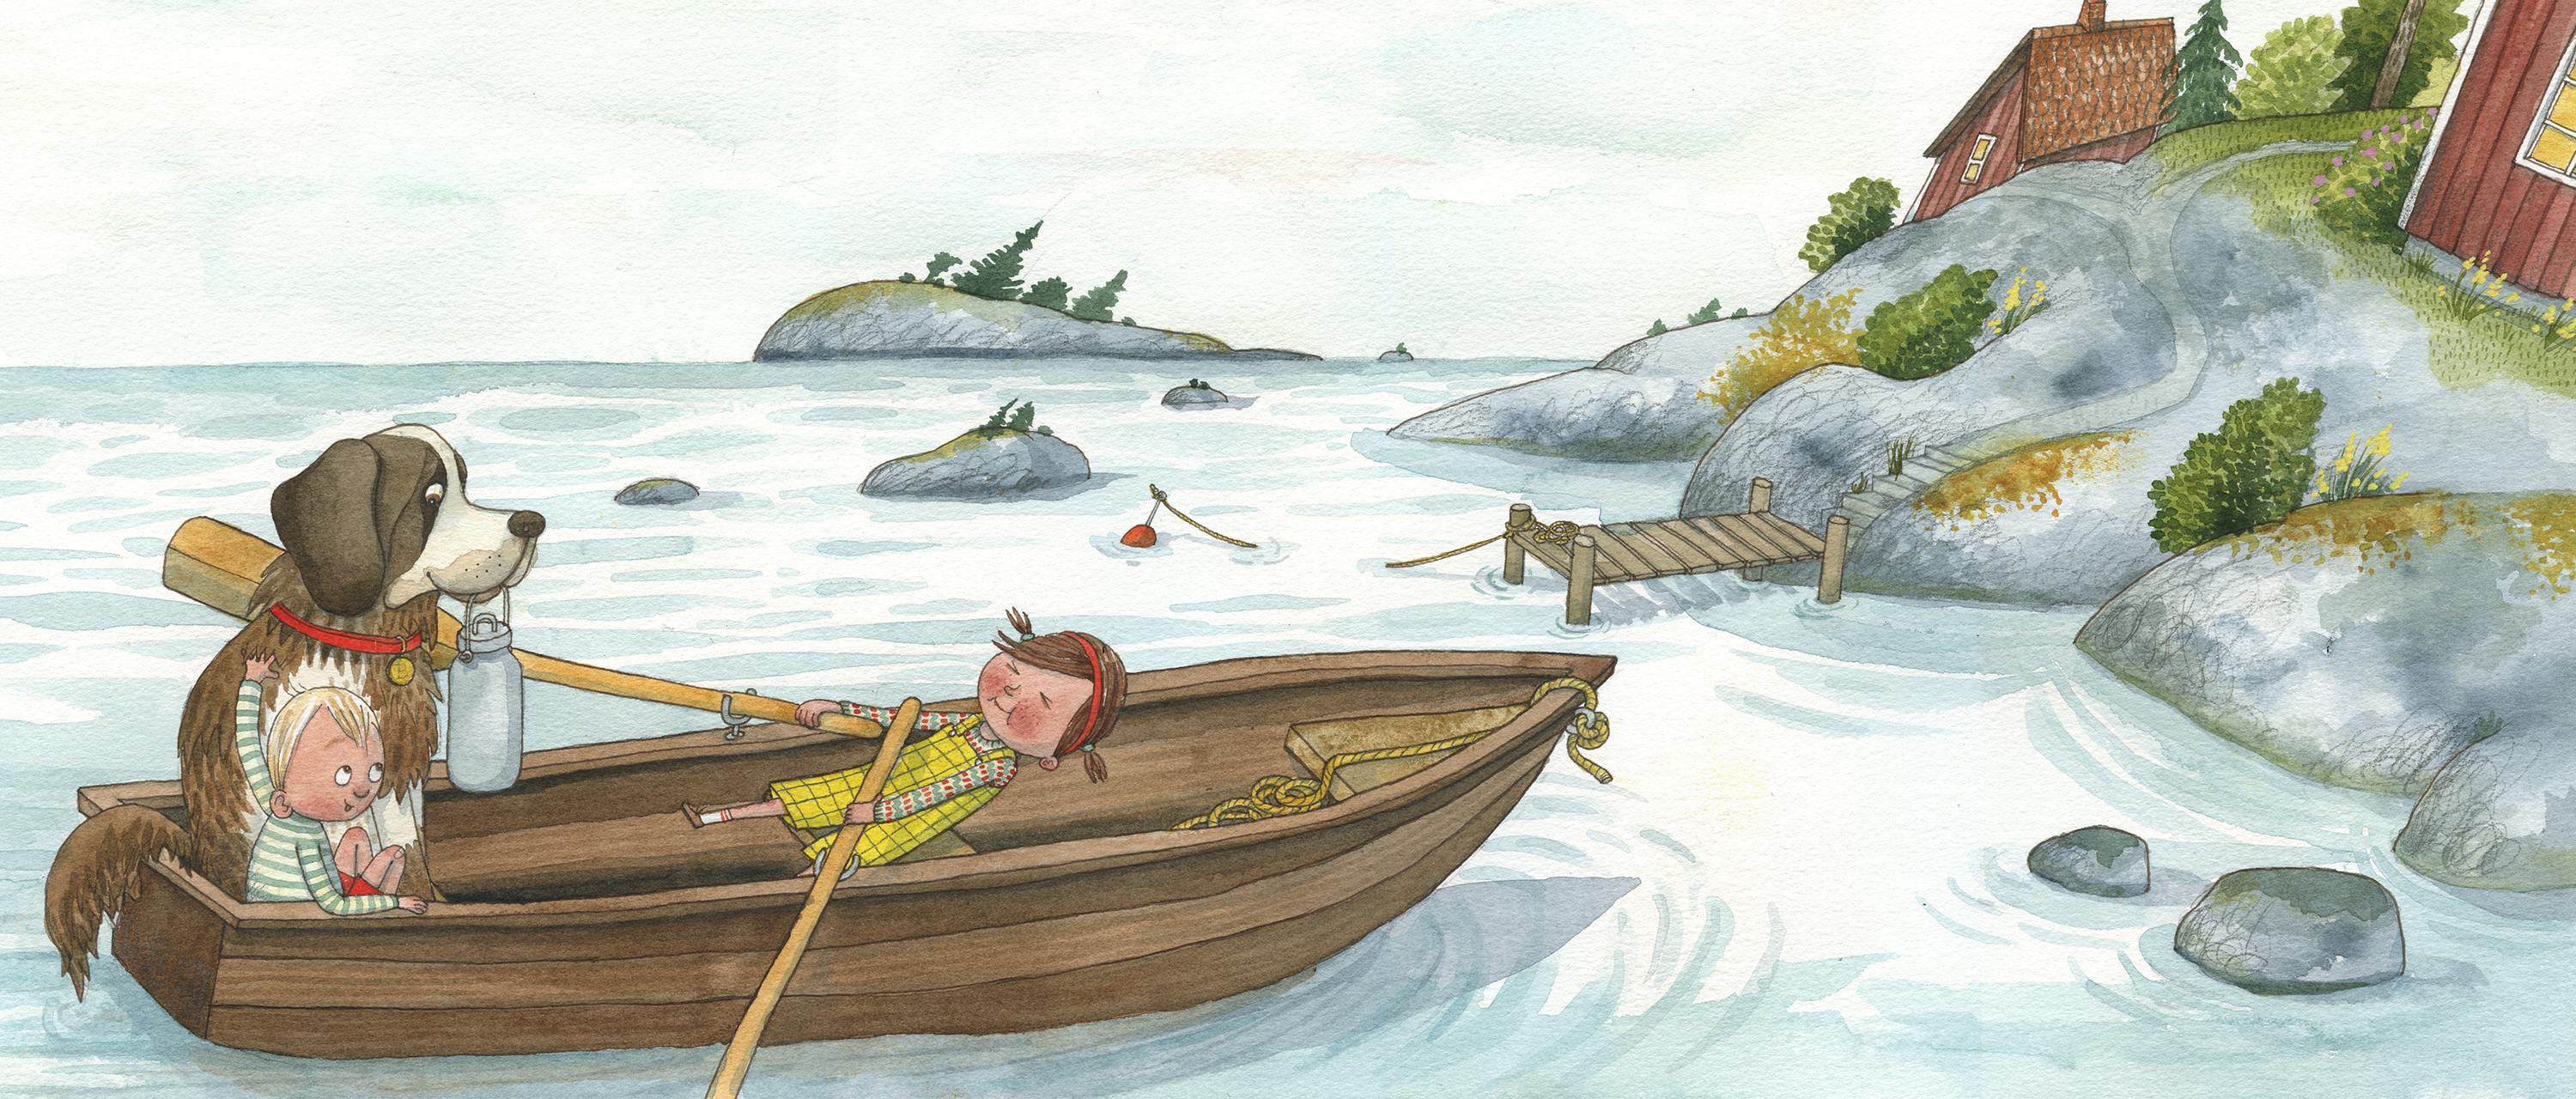 Illustration från boken "Ett litet djur åt Pelle", av Maria Nilsson Thore